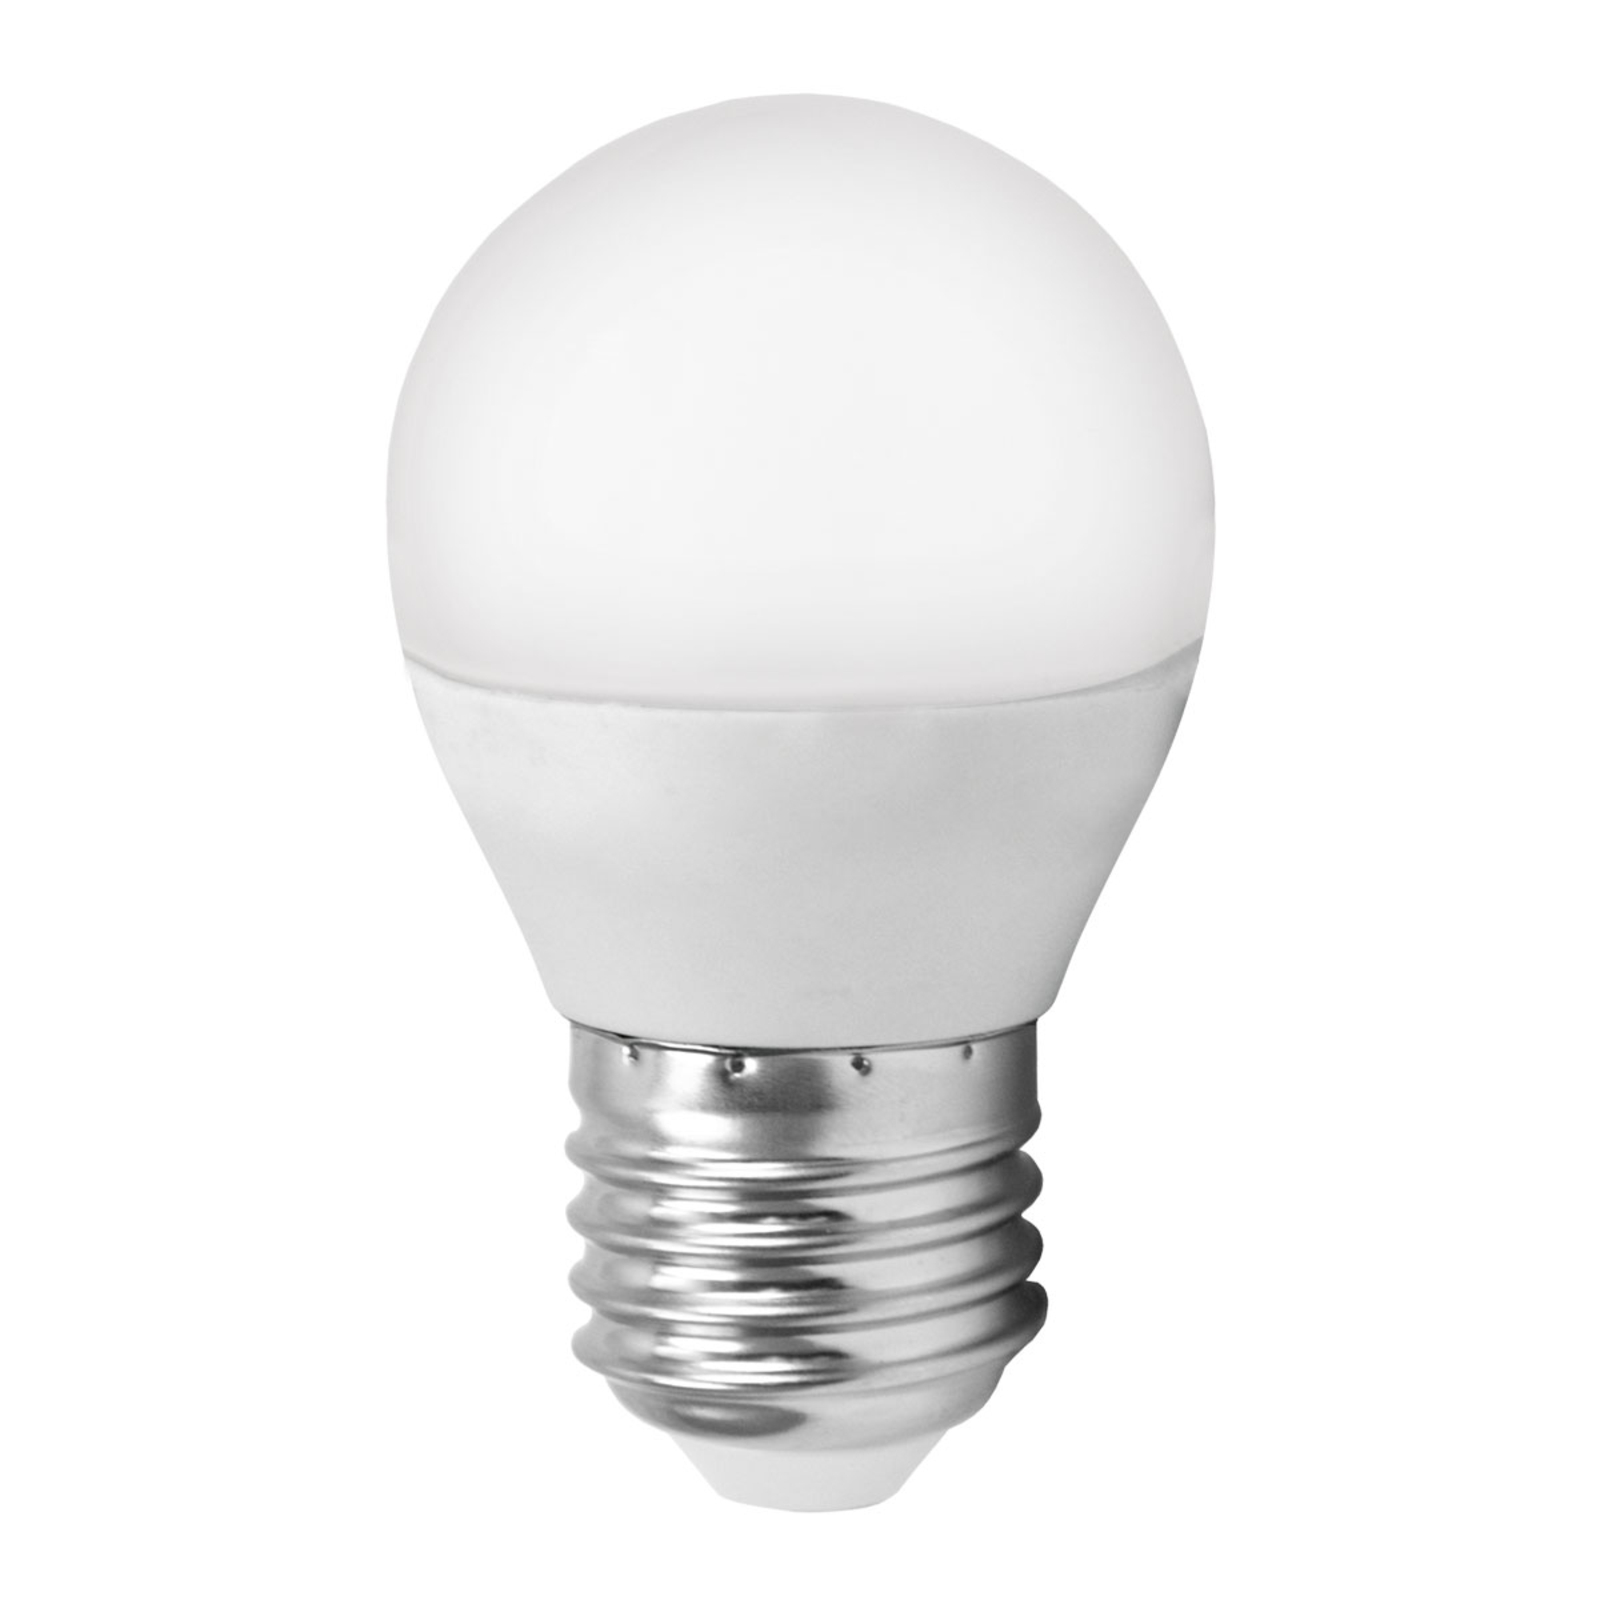 LED lamp E27 G45 5W Miniglobe, warmwit |